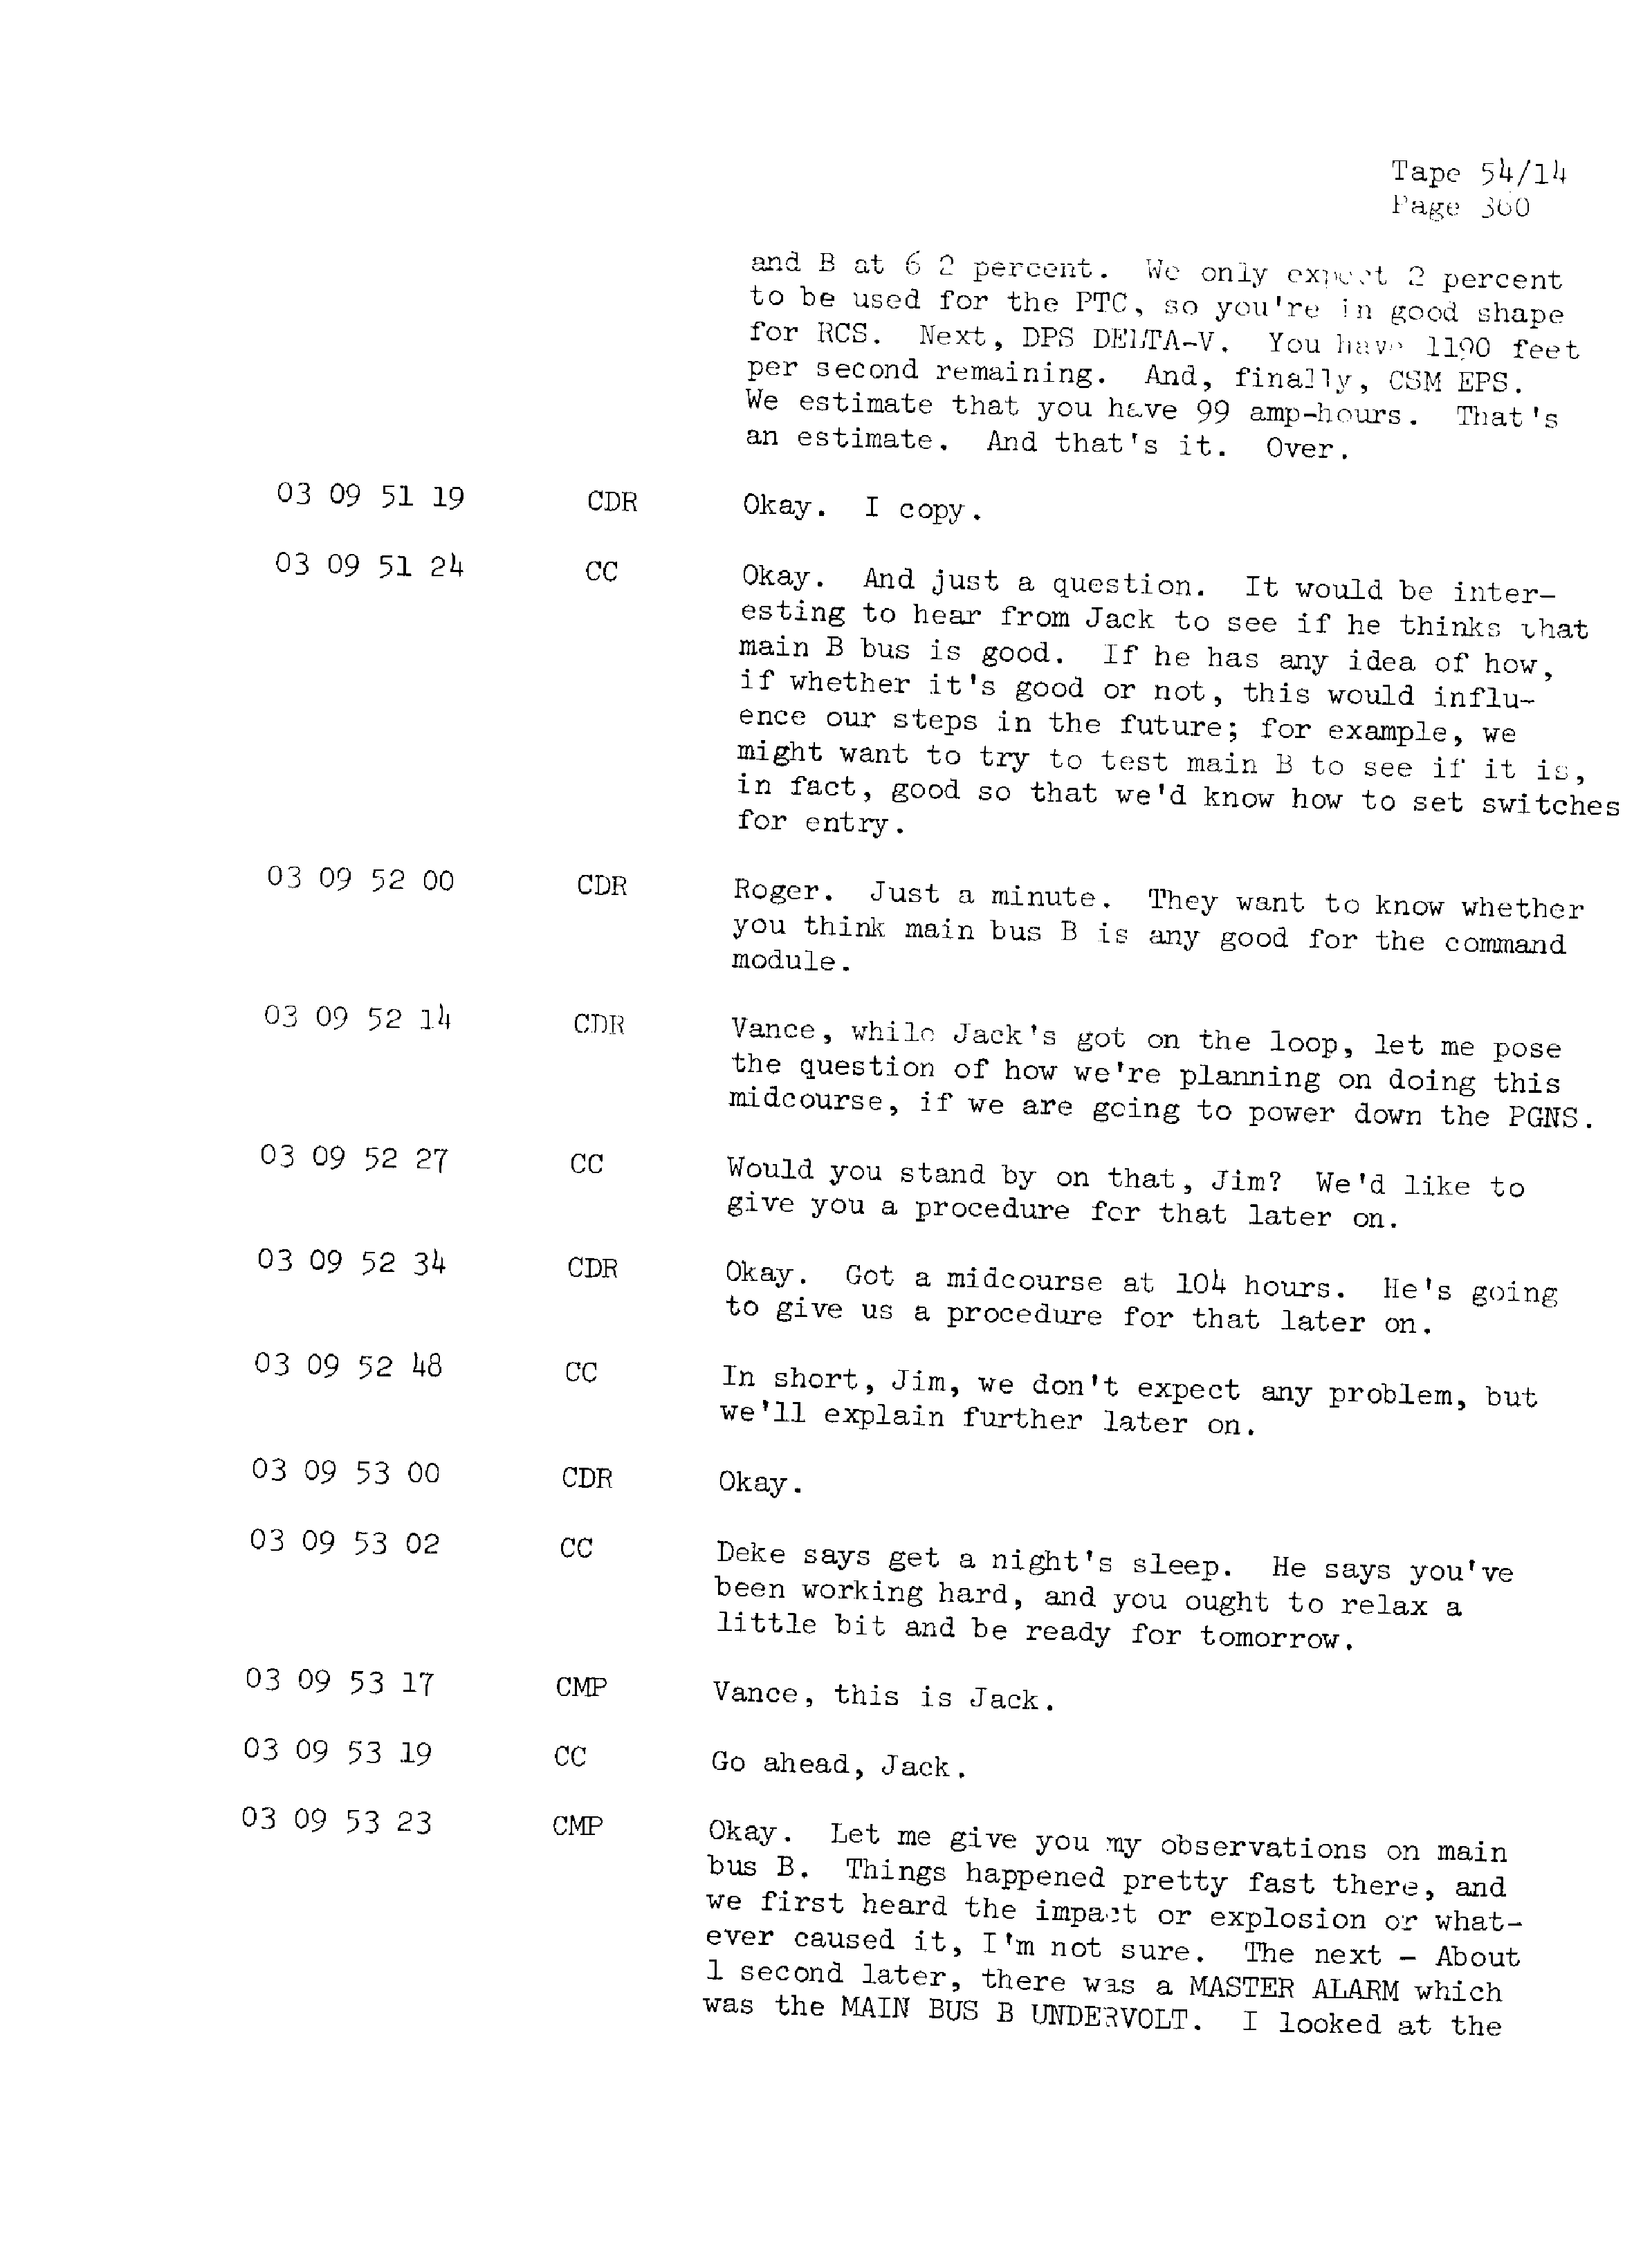 Page 367 of Apollo 13’s original transcript